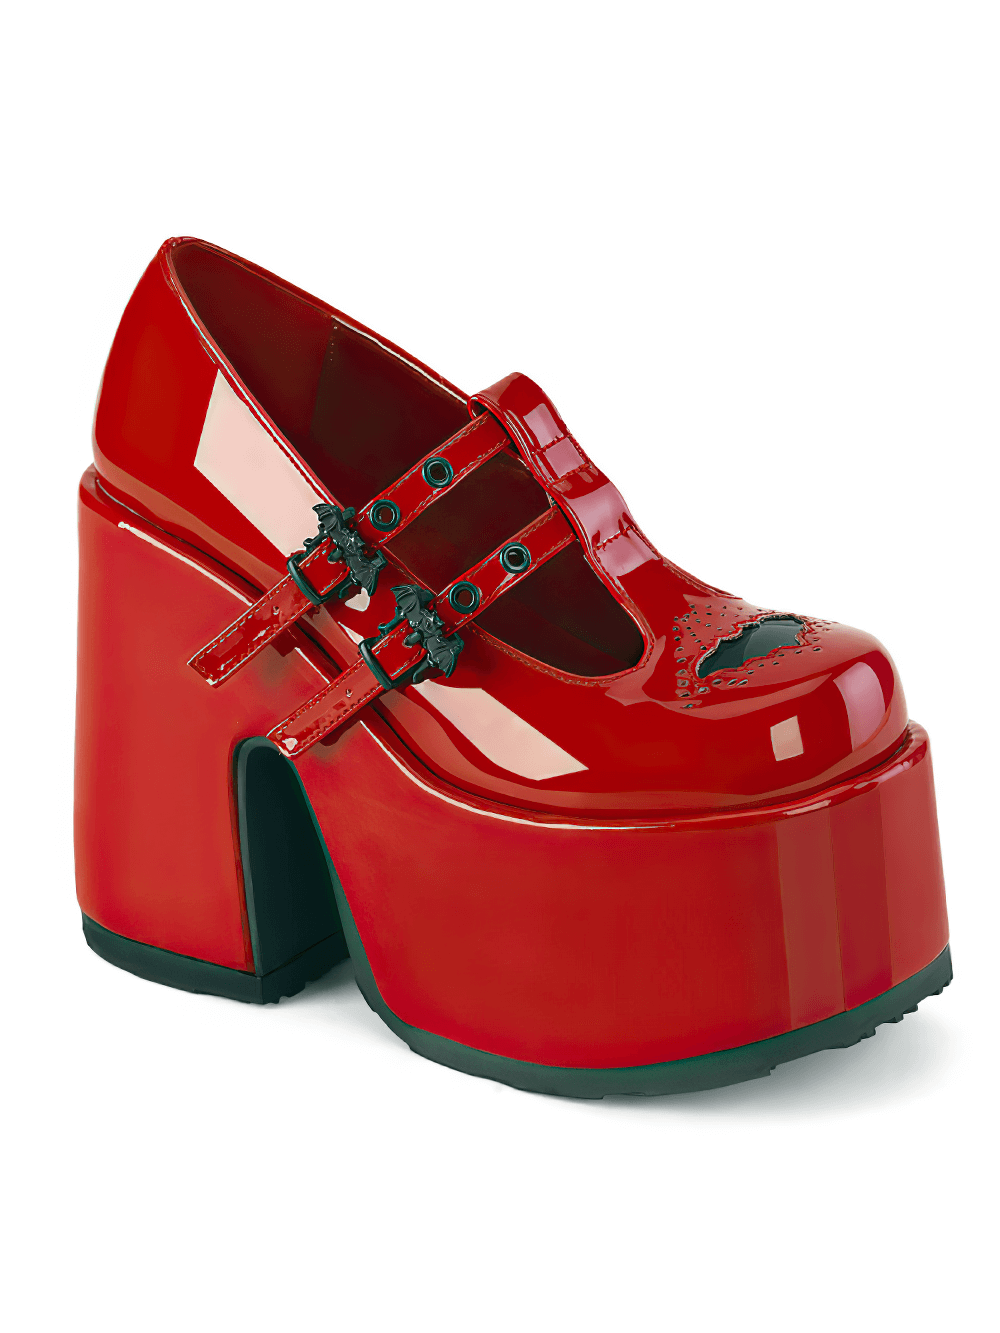 DEMONIA Chaussures Maryjane à plateforme rouge avec boucles chauve-souris